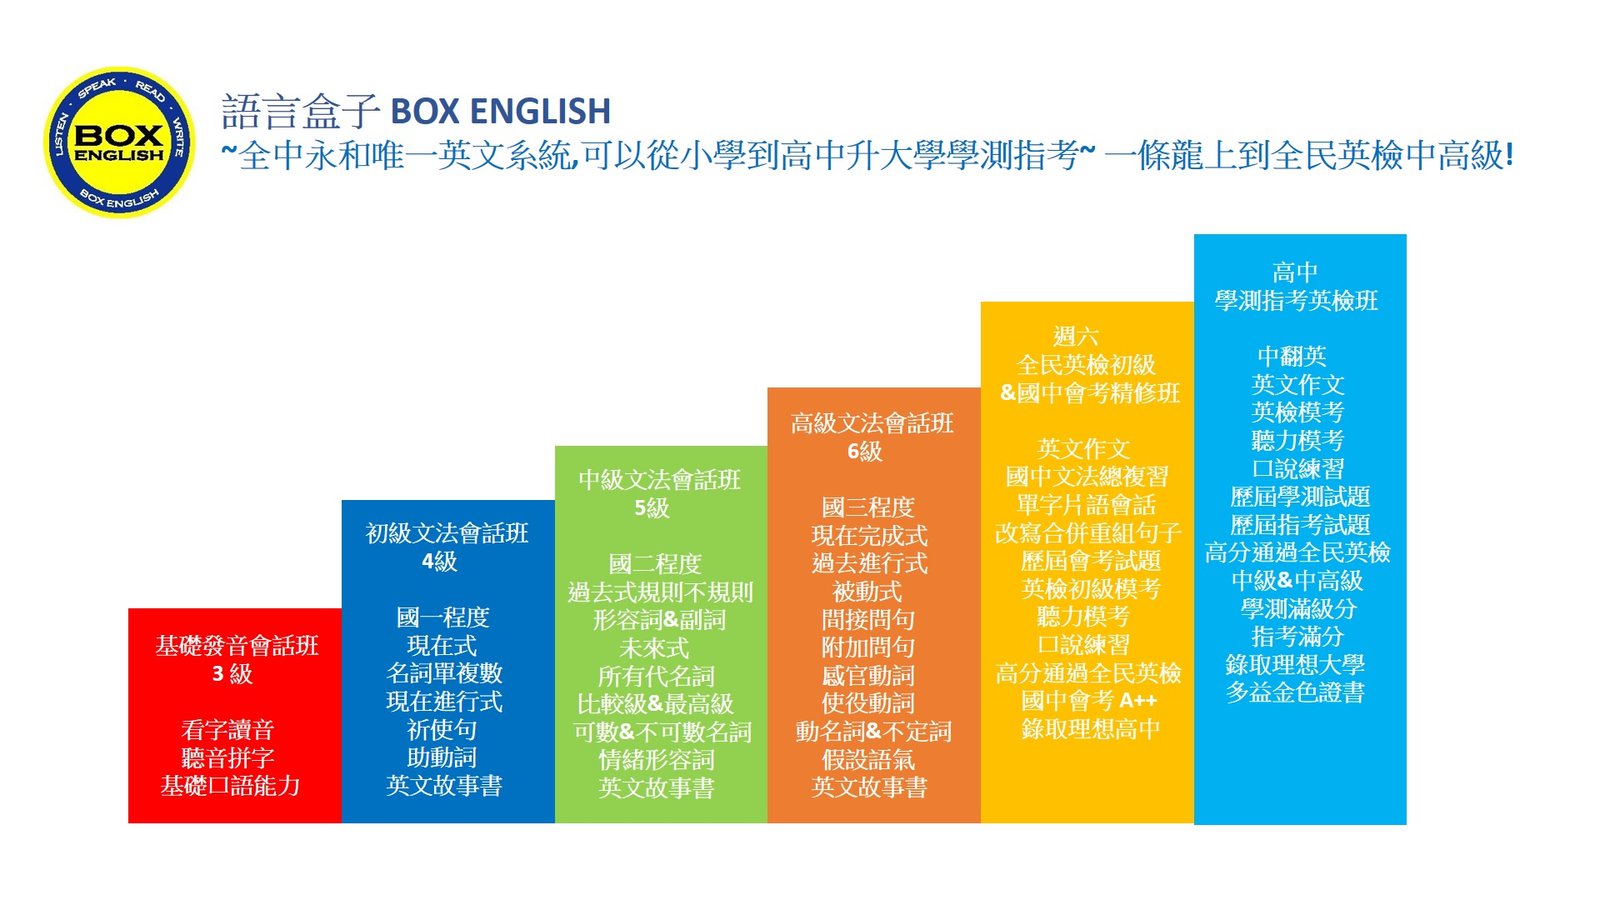 語言盒子程度分級圖